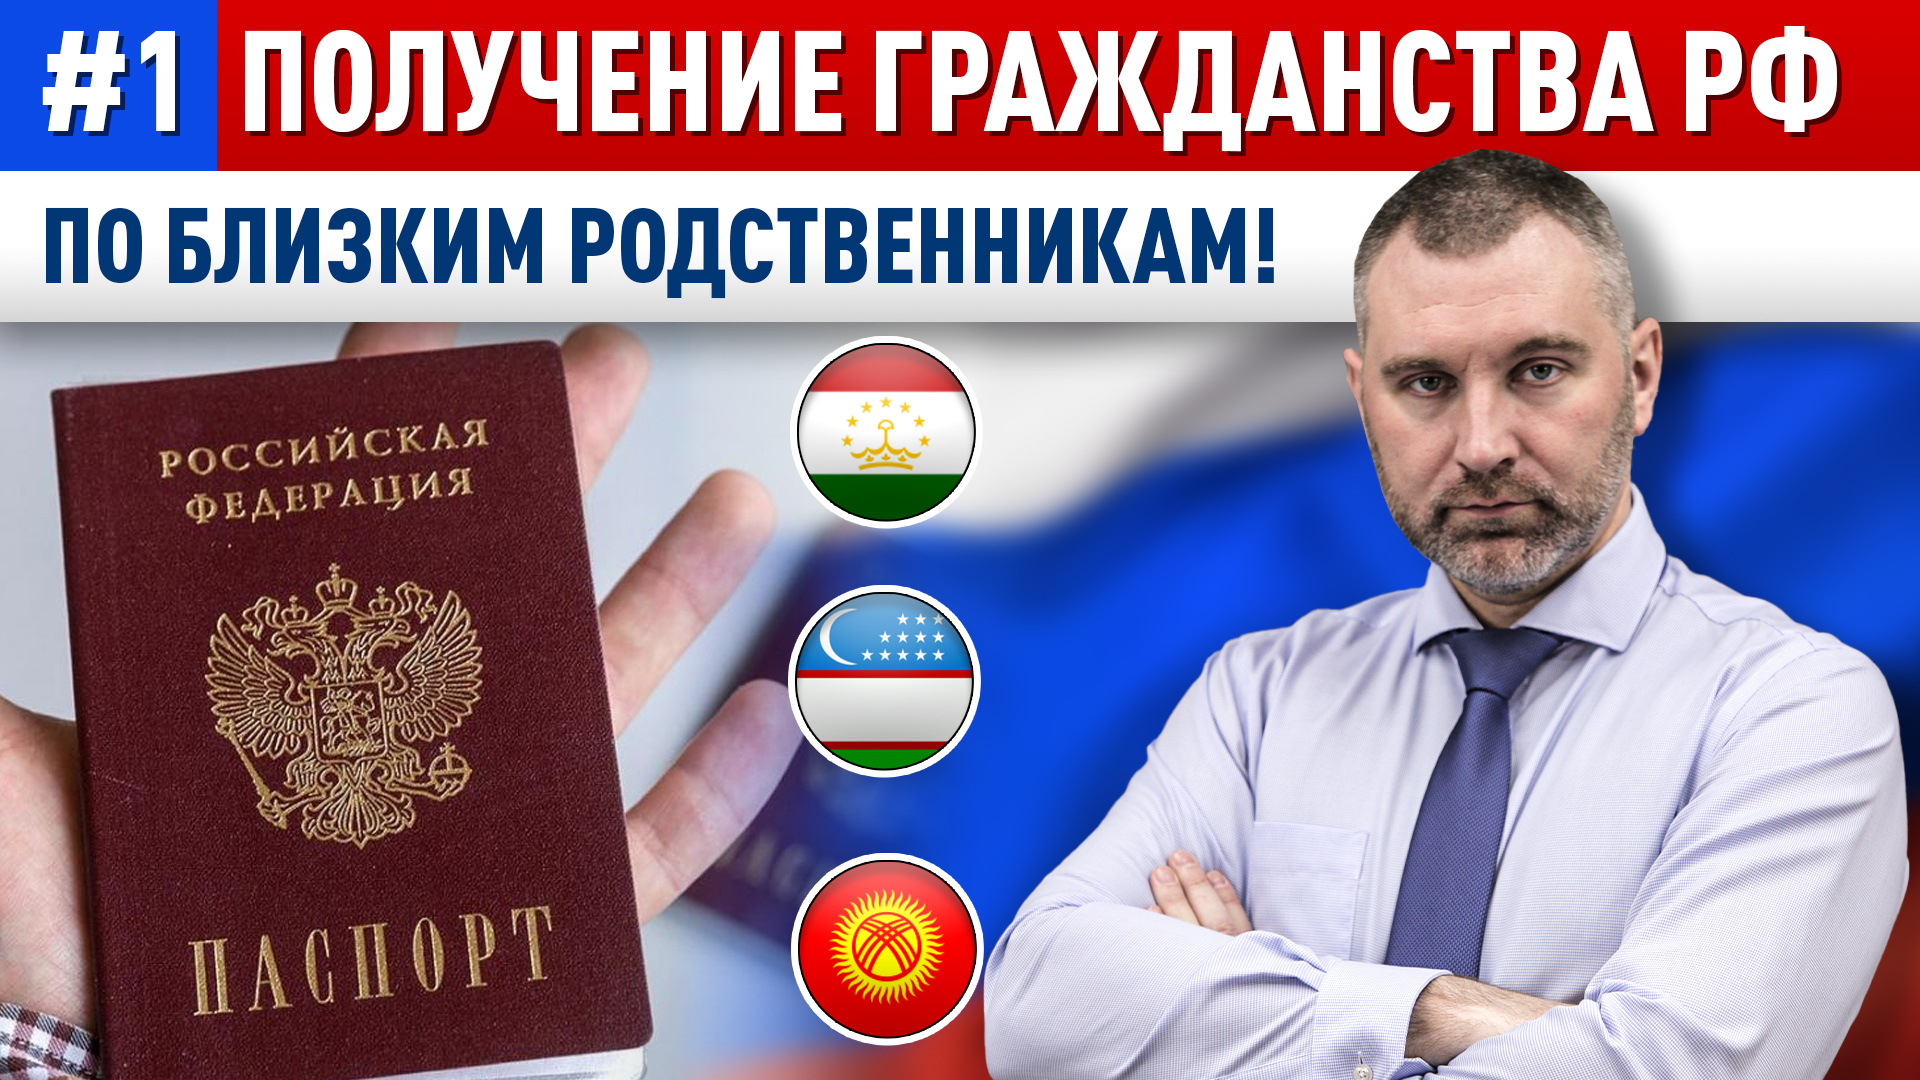 ГРАЖДАНТВО РФ по БЛИЗКИМ РОДСТВЕННИКАМ! Как получить гражданство России